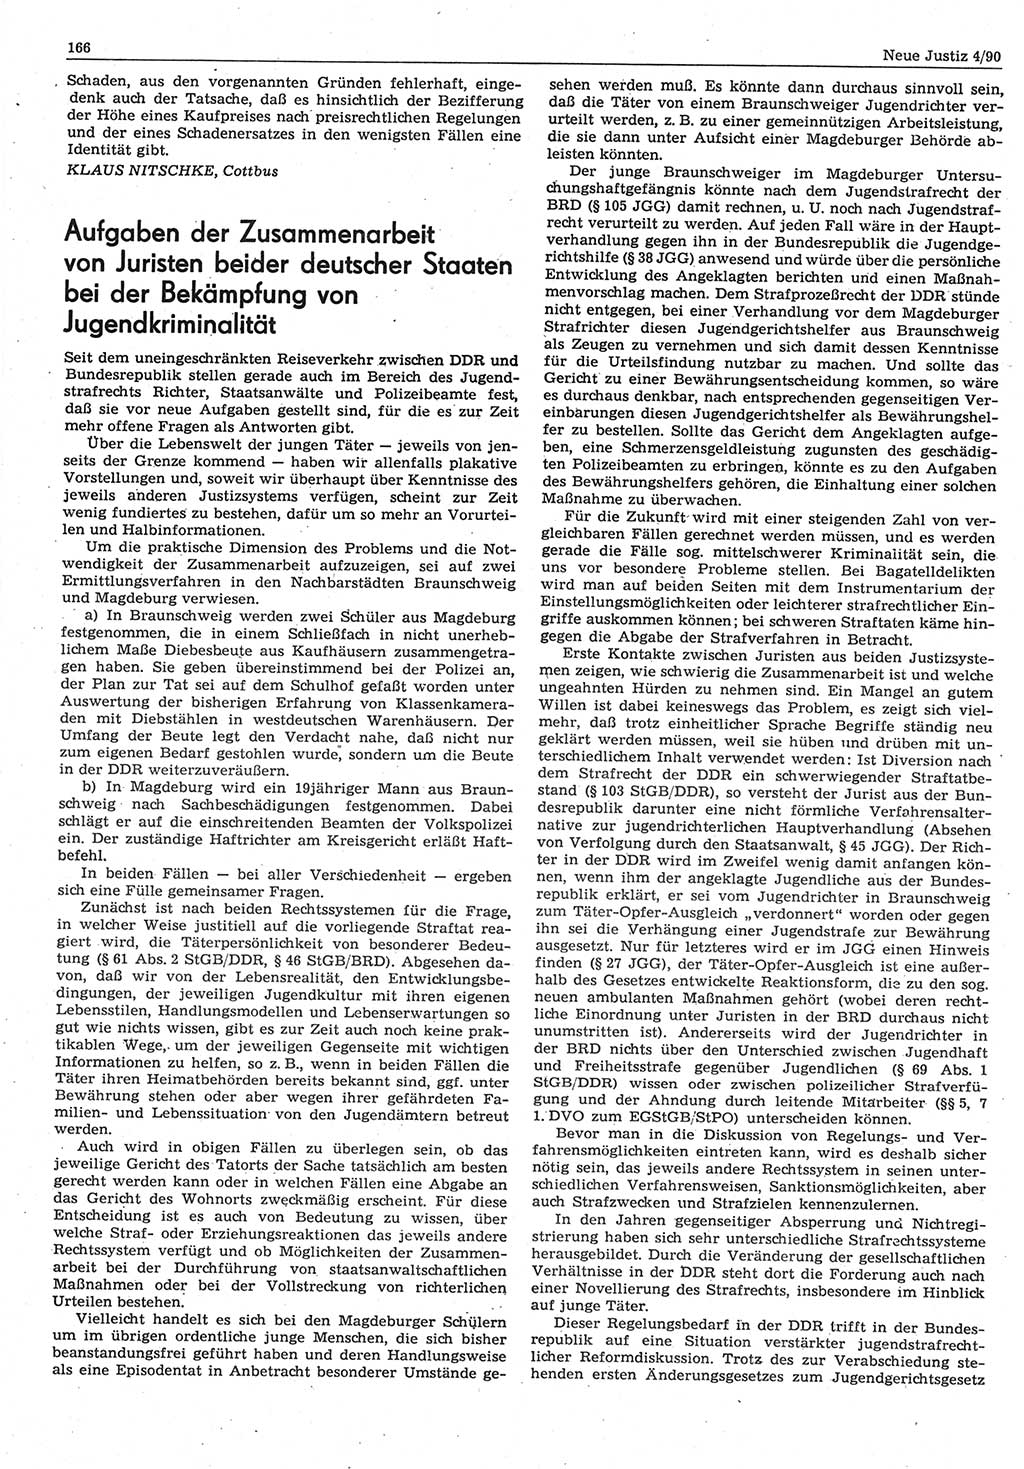 Neue Justiz (NJ), Zeitschrift für Rechtsetzung und Rechtsanwendung [Deutsche Demokratische Republik (DDR)], 44. Jahrgang 1990, Seite 166 (NJ DDR 1990, S. 166)